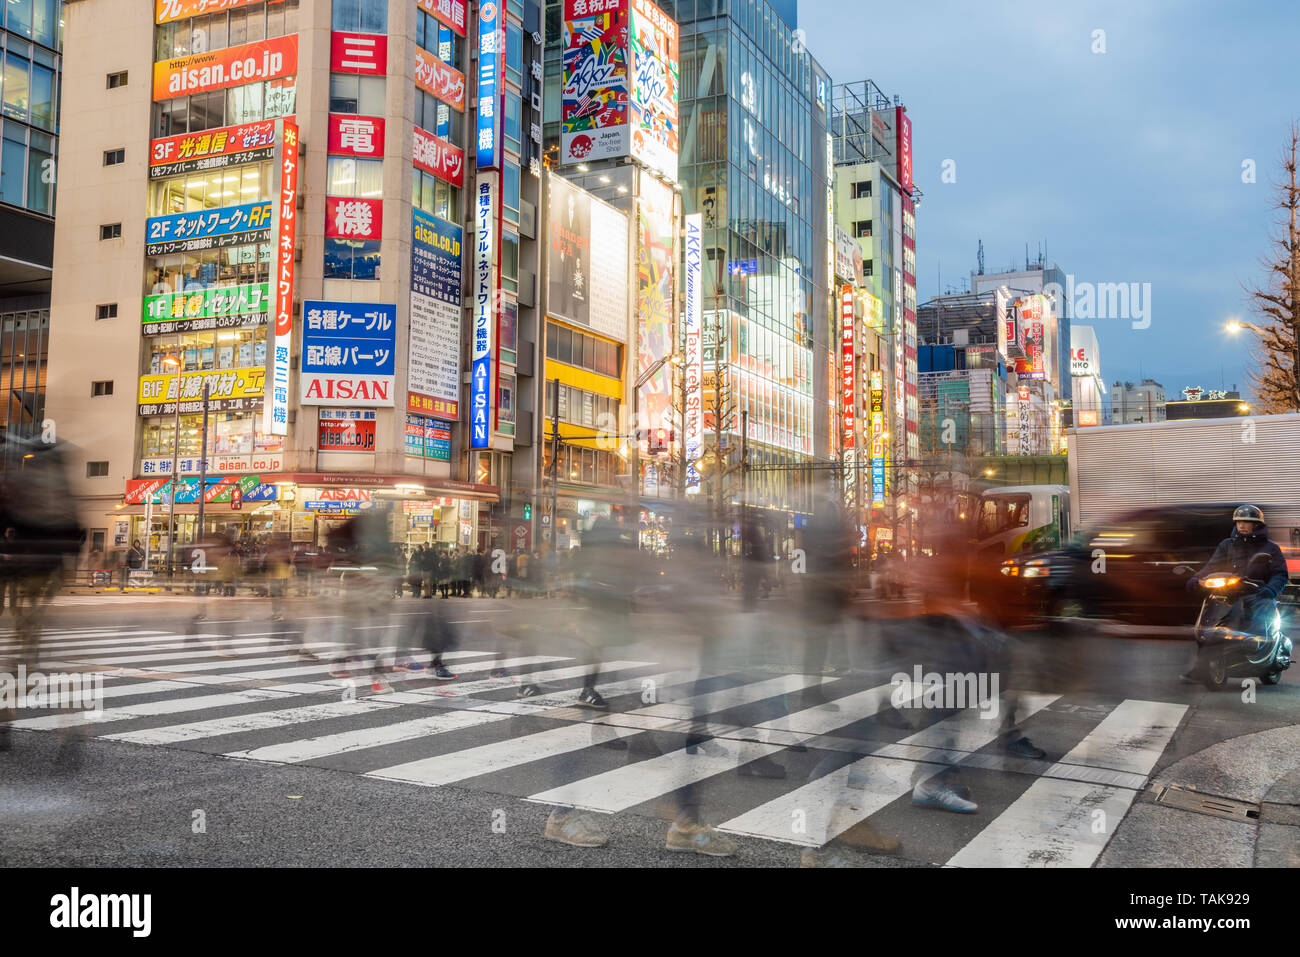 Tokyo, Giappone - 23 Marzo 2019: Foto di persone che attraversano una strada di Akihabara, un quartiere dello shopping nel centro di Tokyo famosa per i suoi negozi di elettronica Foto Stock